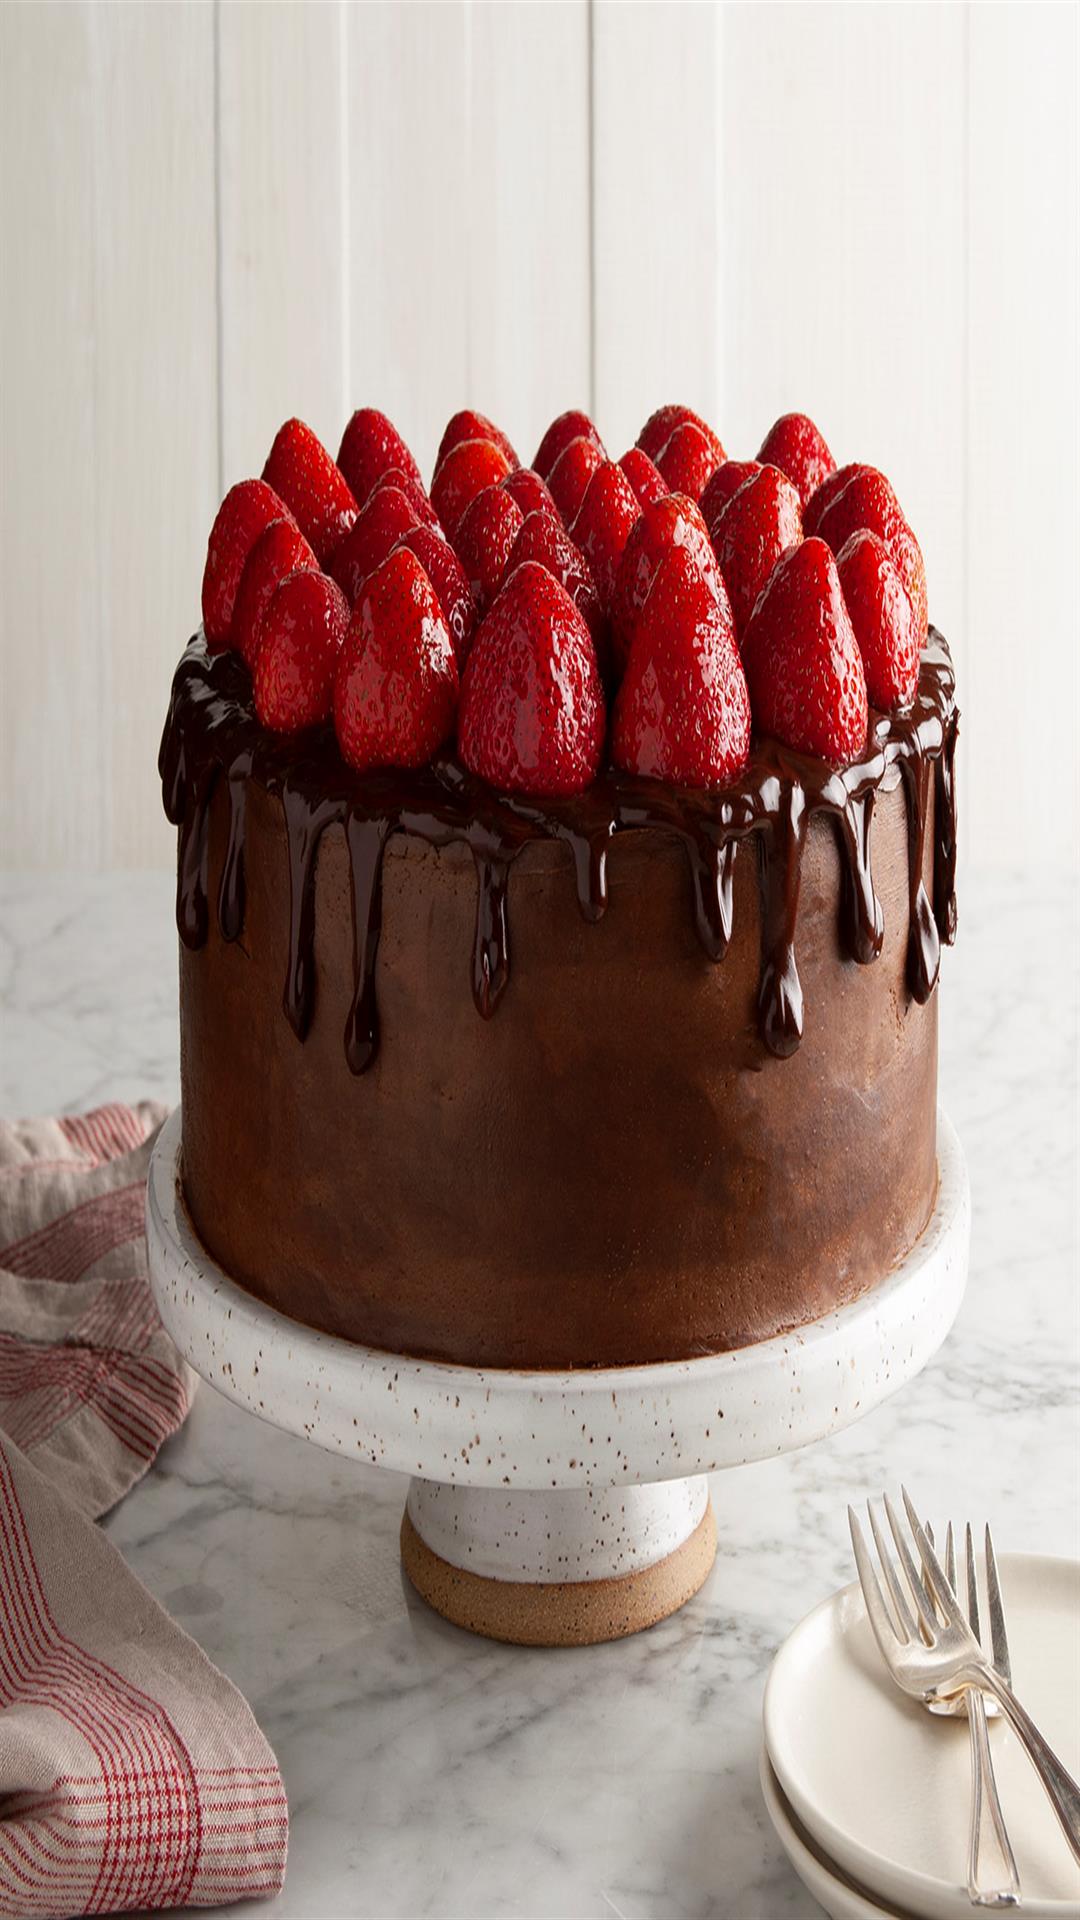 Flourless Chocolate Cake Recipe | Epicurious